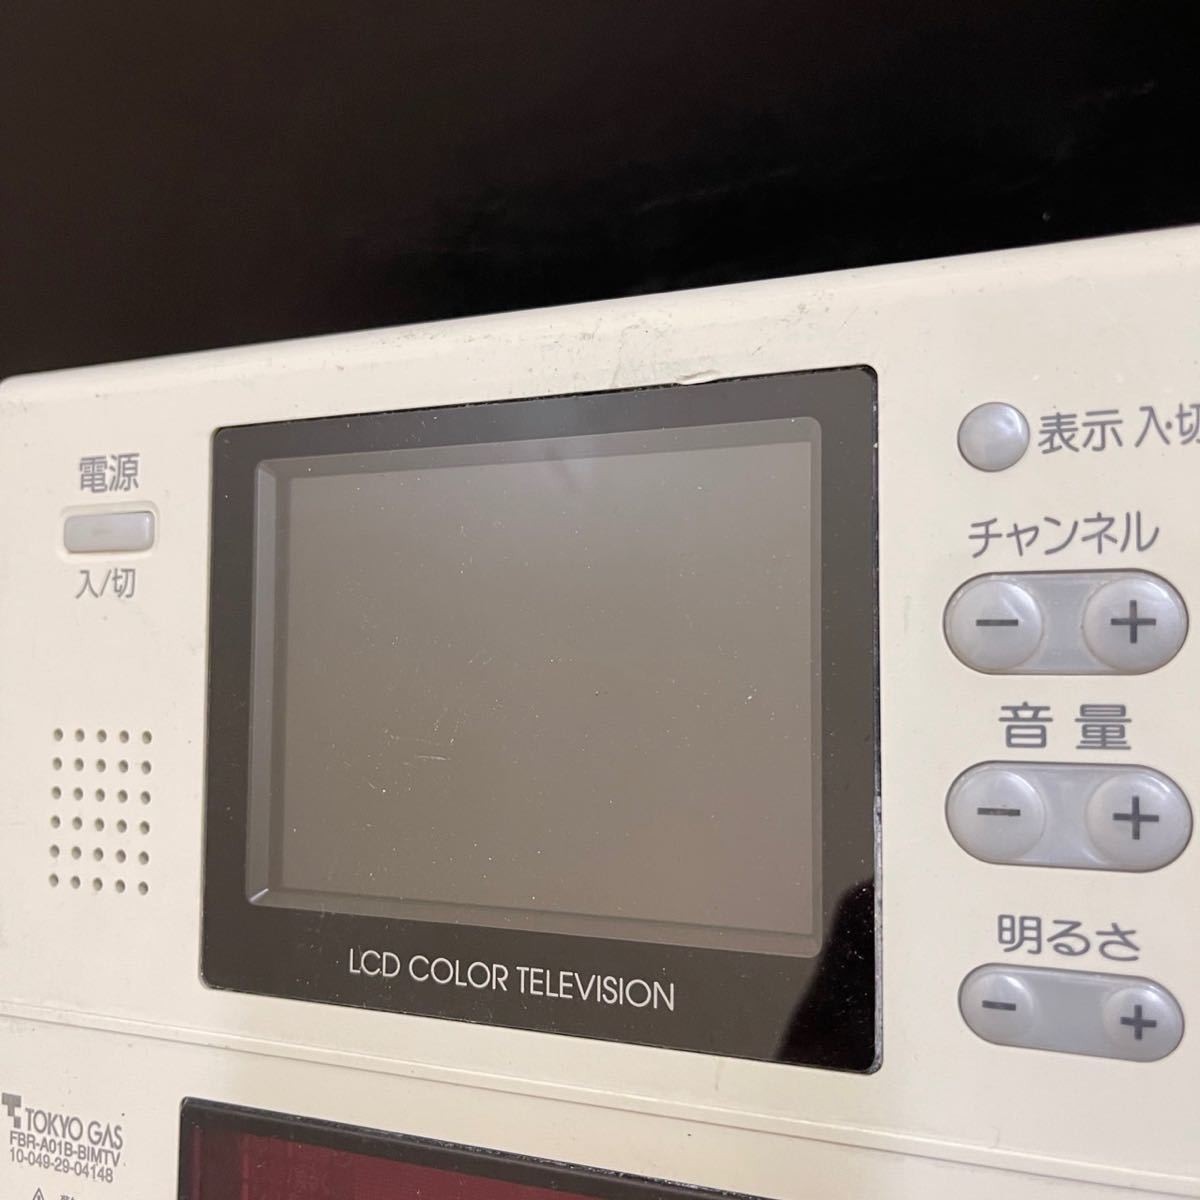 【即決】ost218TOKYO GAS 東京ガス 浴室TV給湯器リモコン FBR-A01B-BIMTV 動作未確認/返品不可DIAHOT_画像2